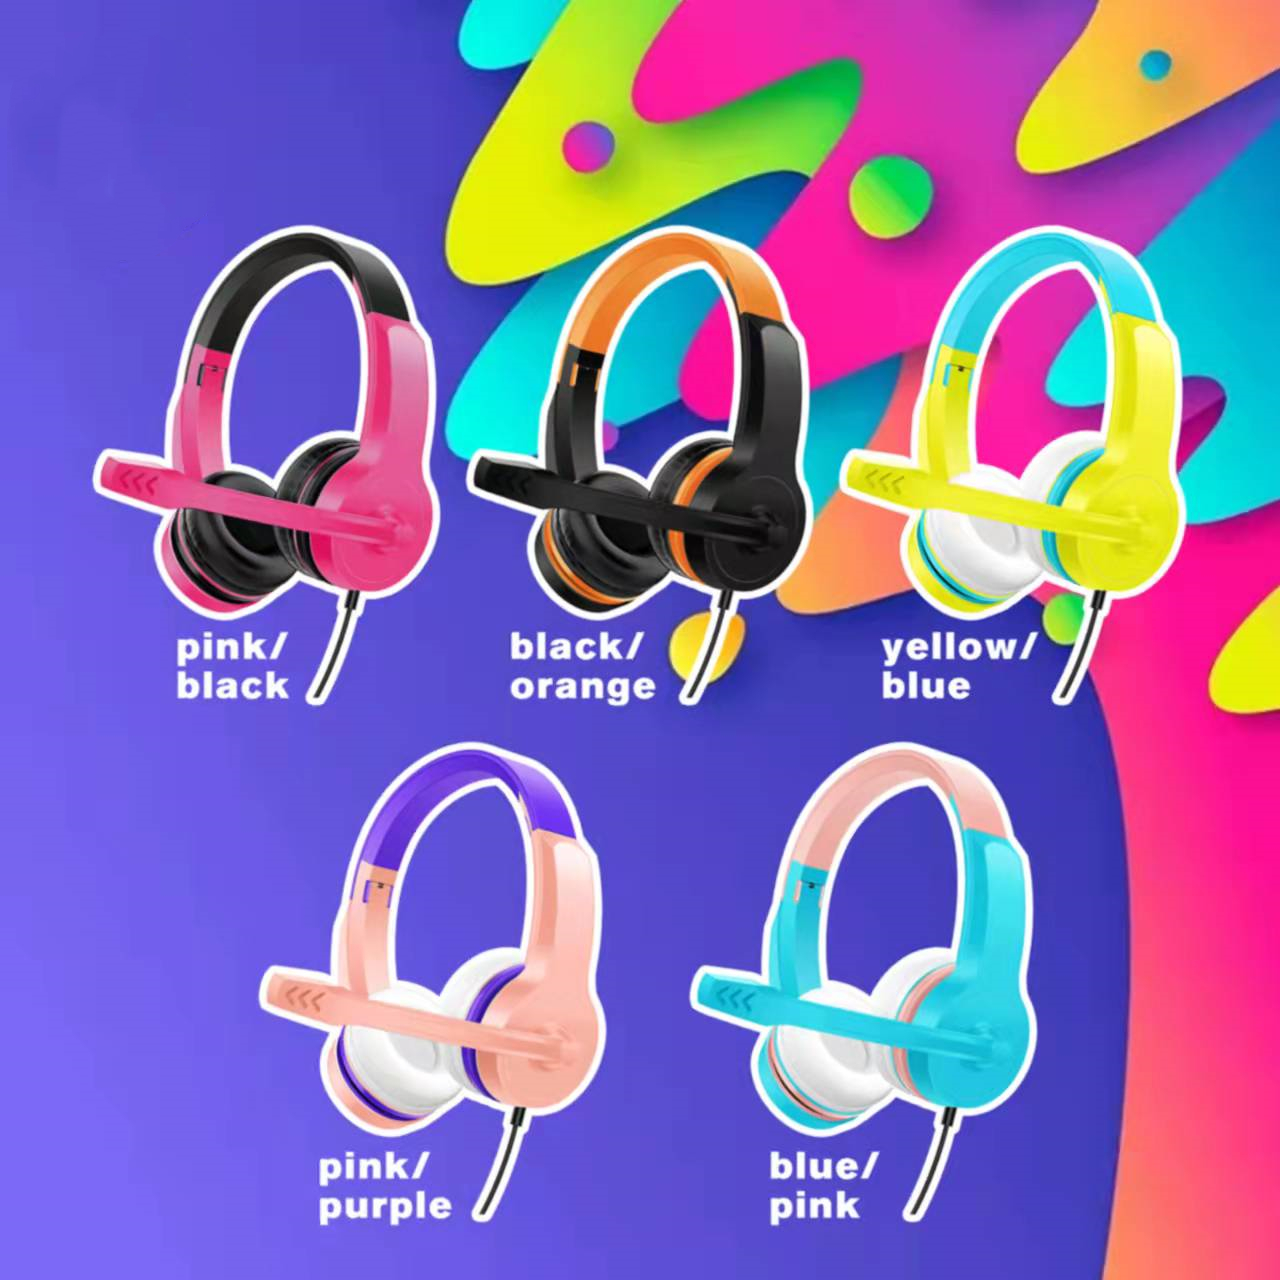 Over head Headphones Gaming Headphones Amazon for Gamer